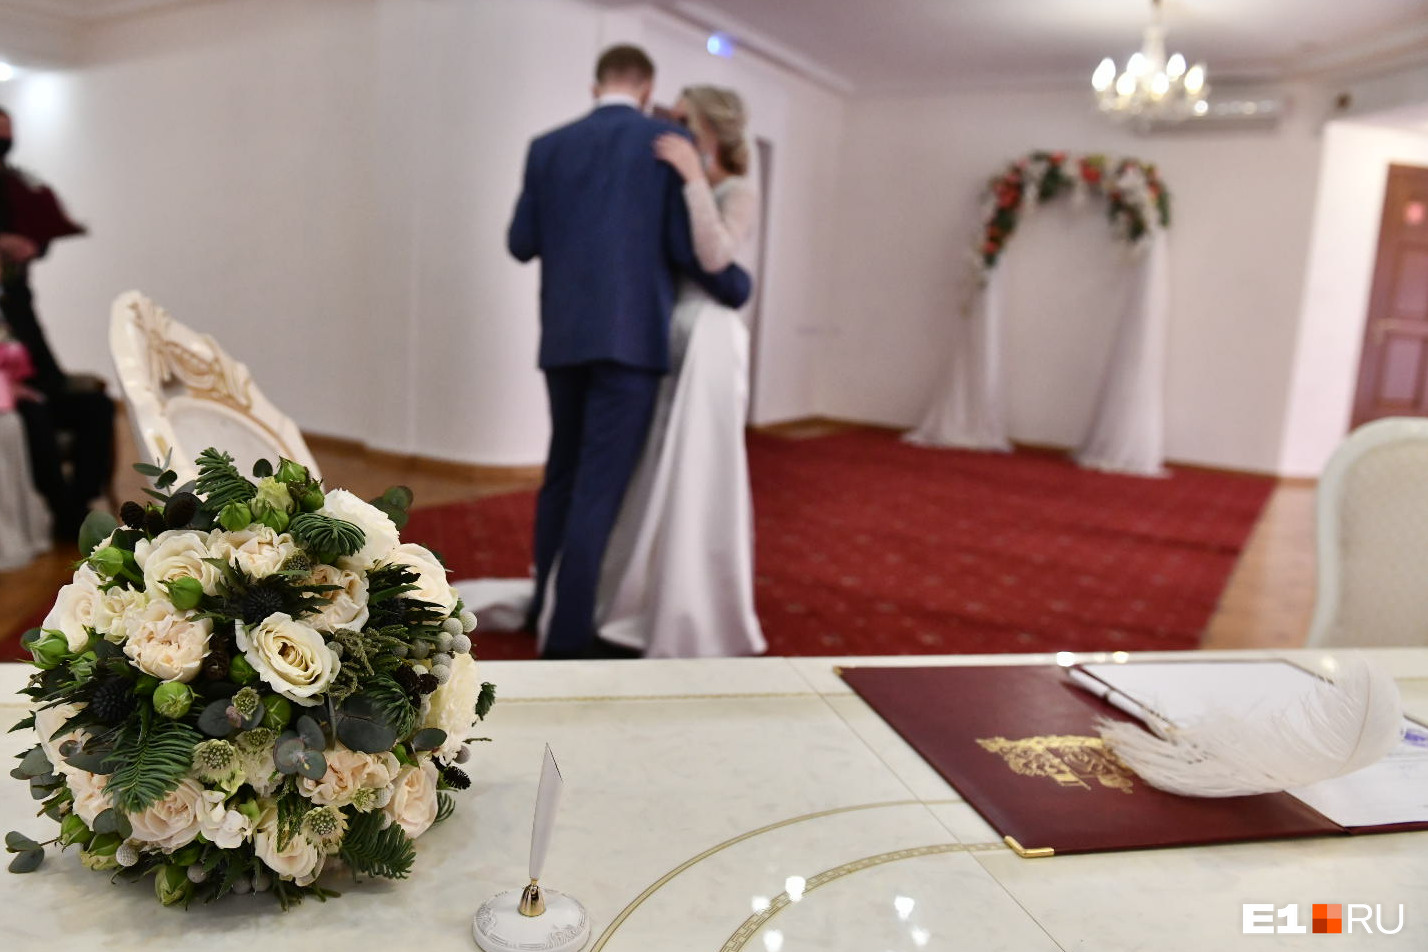 Уральцы стали чаще жениться и реже разводиться. А что случилось?